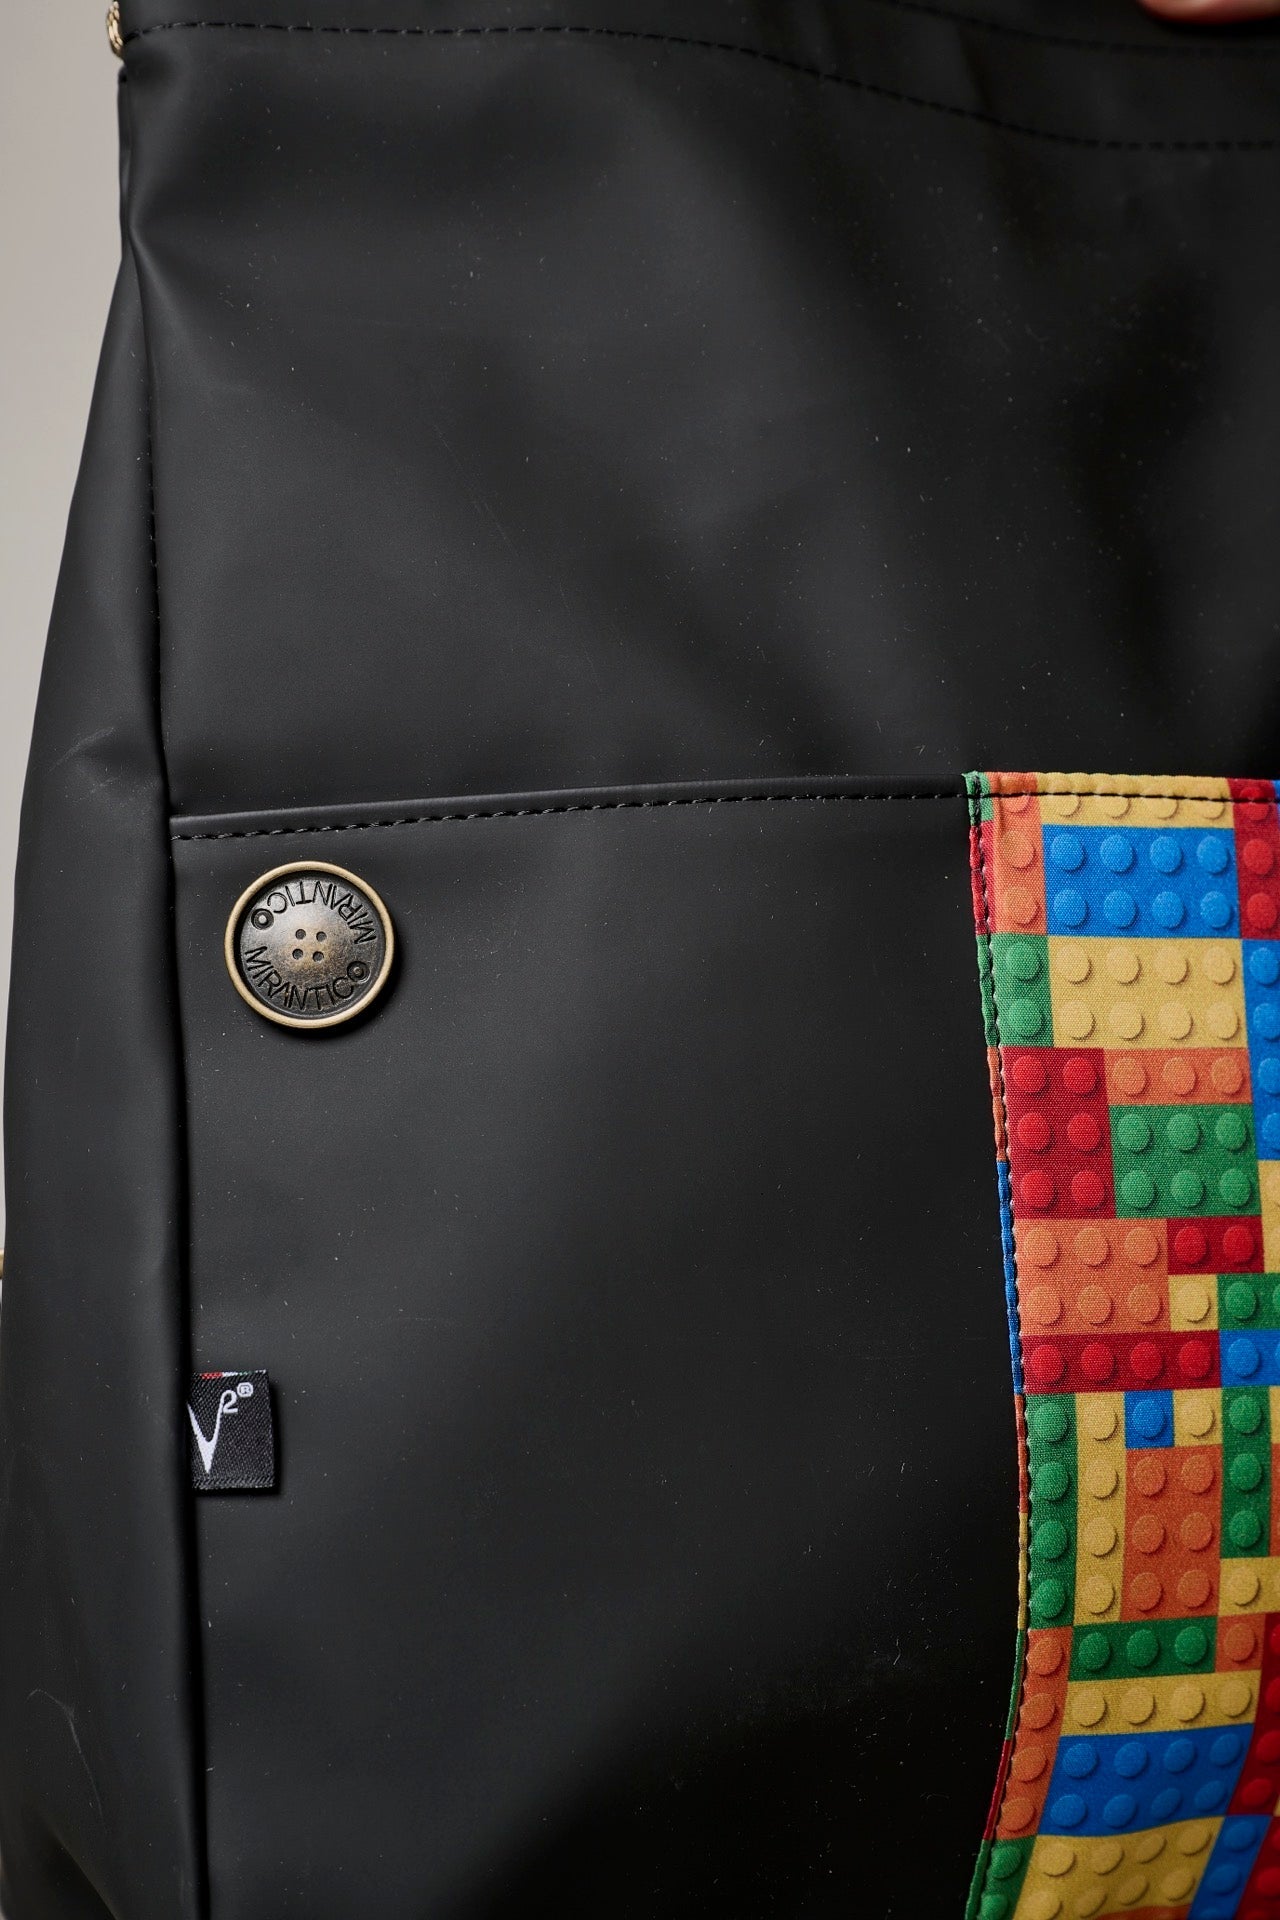 V2 x Mirantico - Black Memo Bag Backpack with Pocket in Bricks fabric